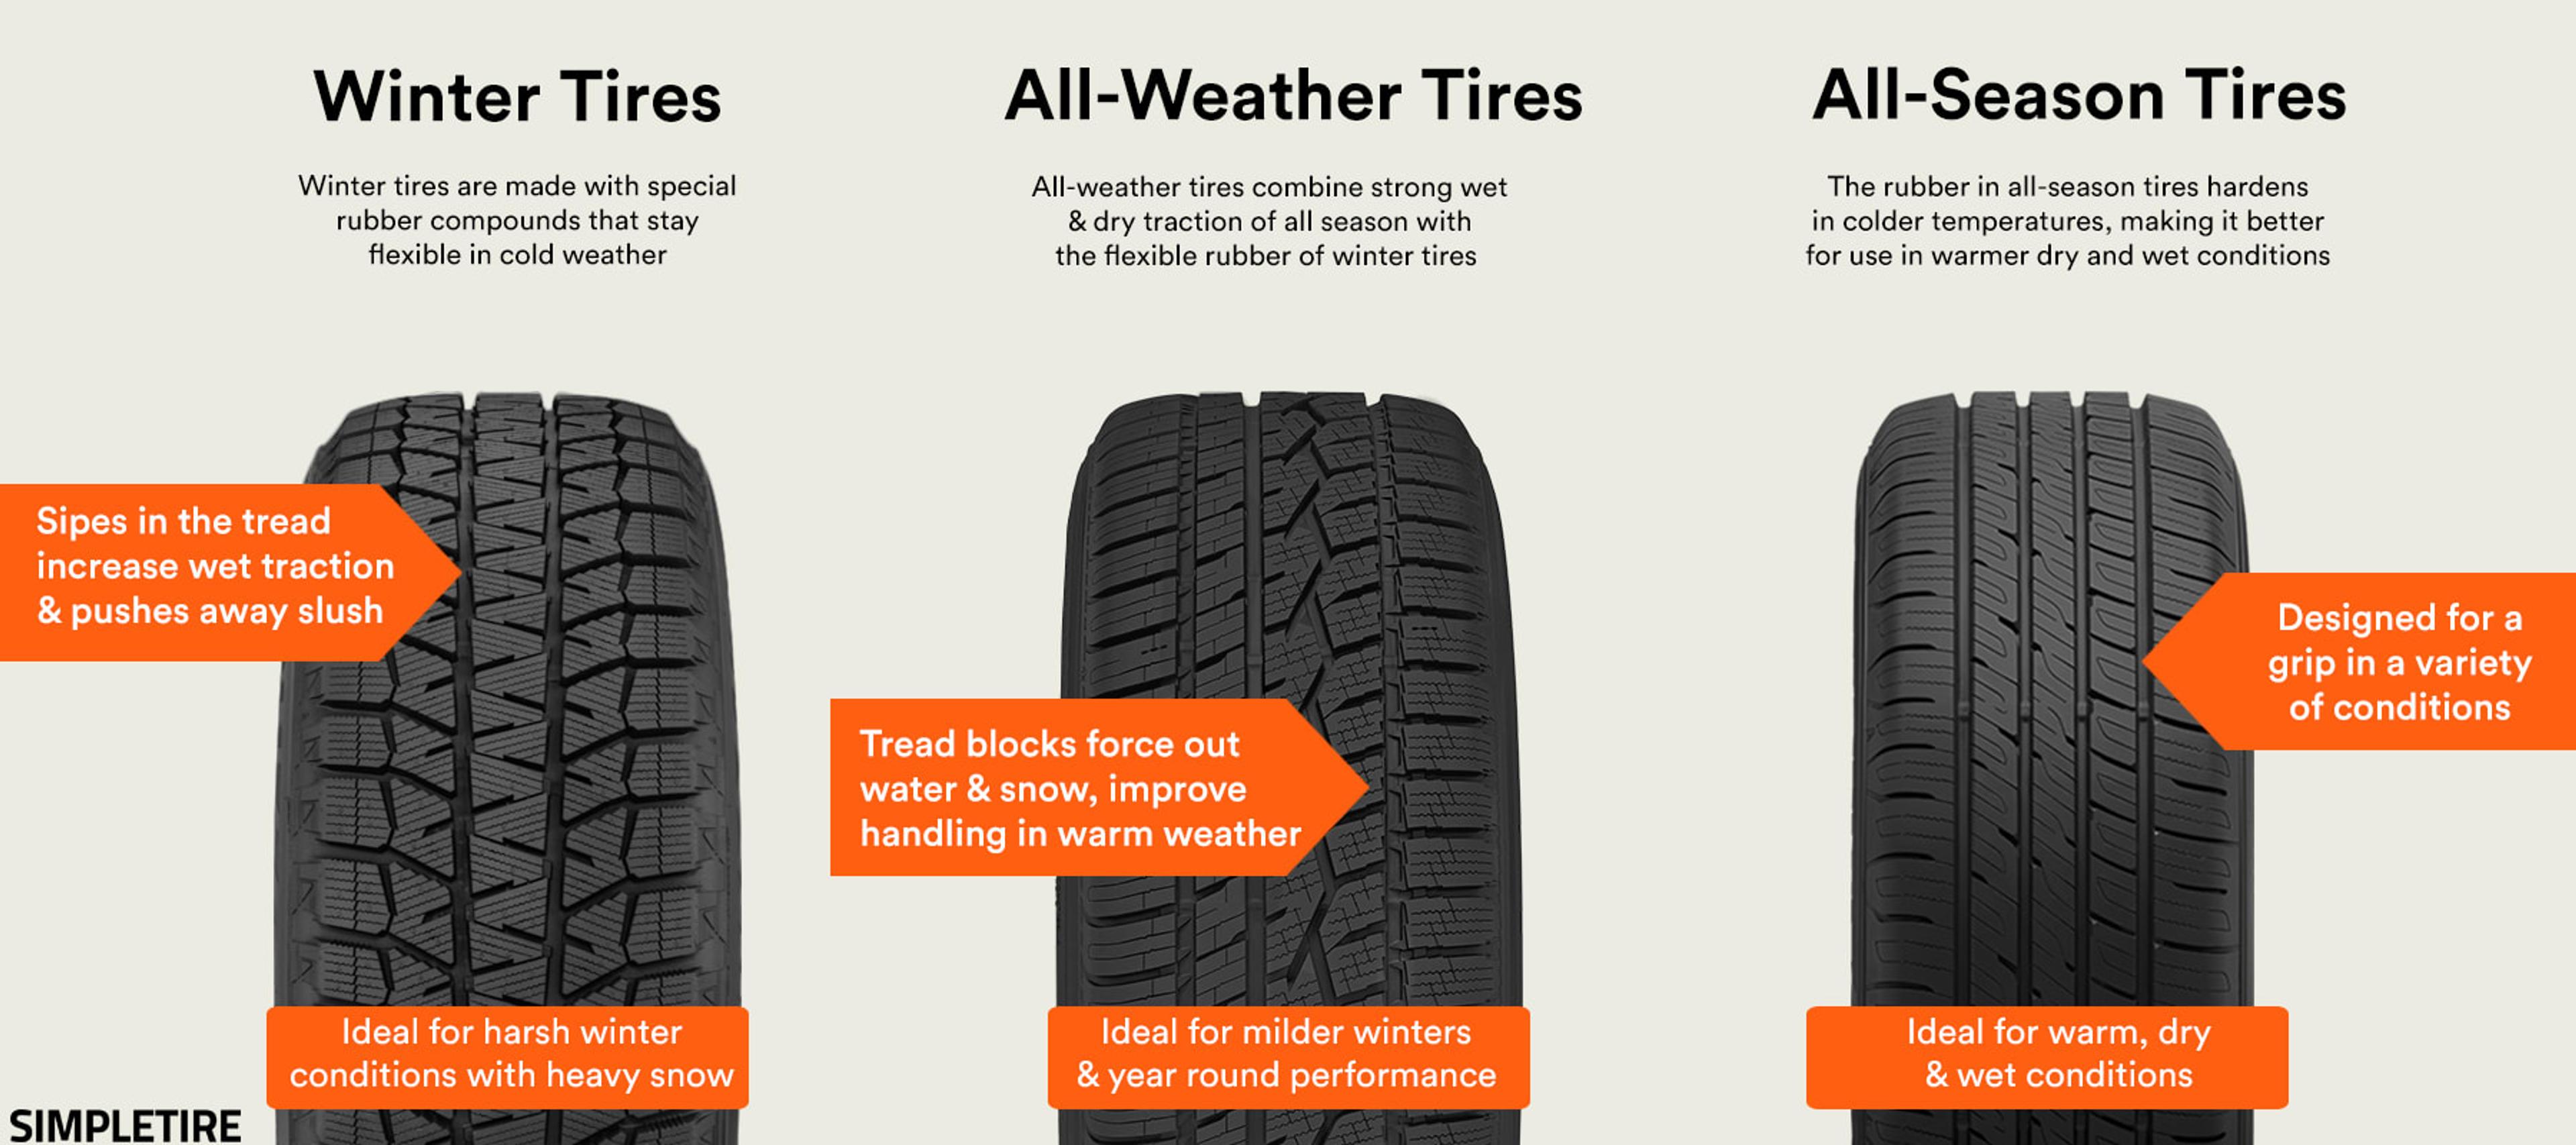 Get a Grip — Winter Tires